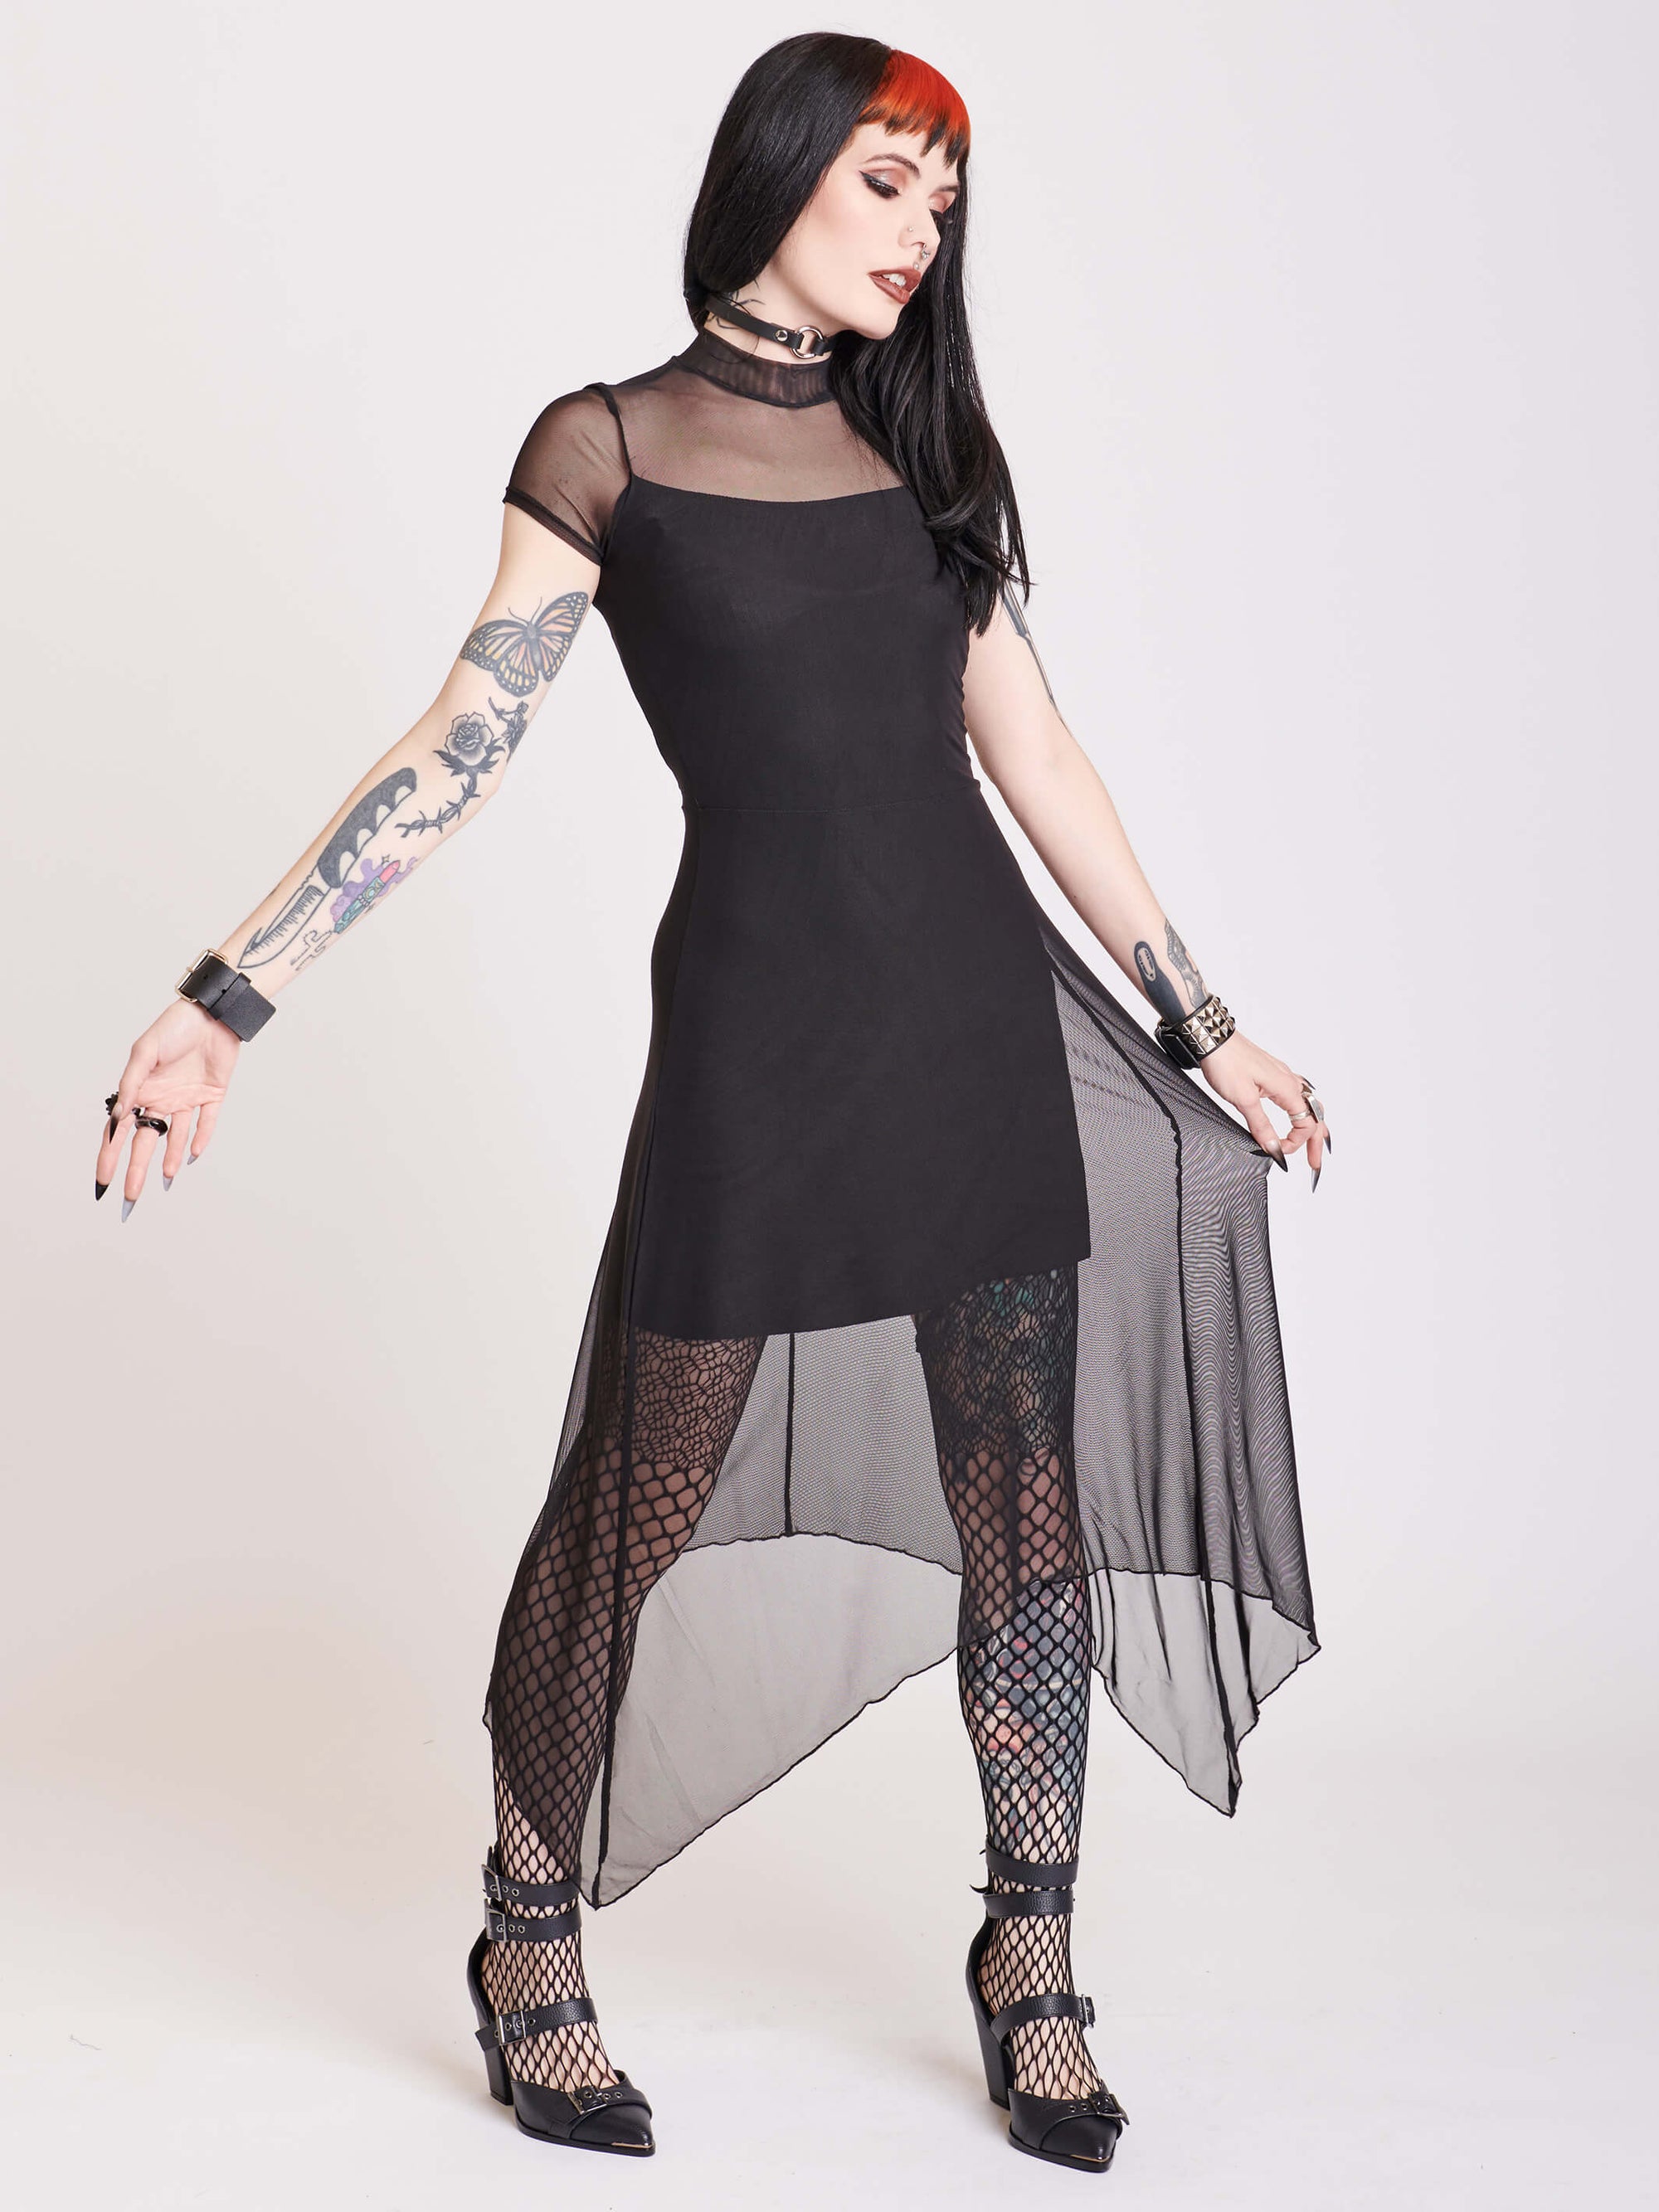 Goth Clothing & Alternative Apparel